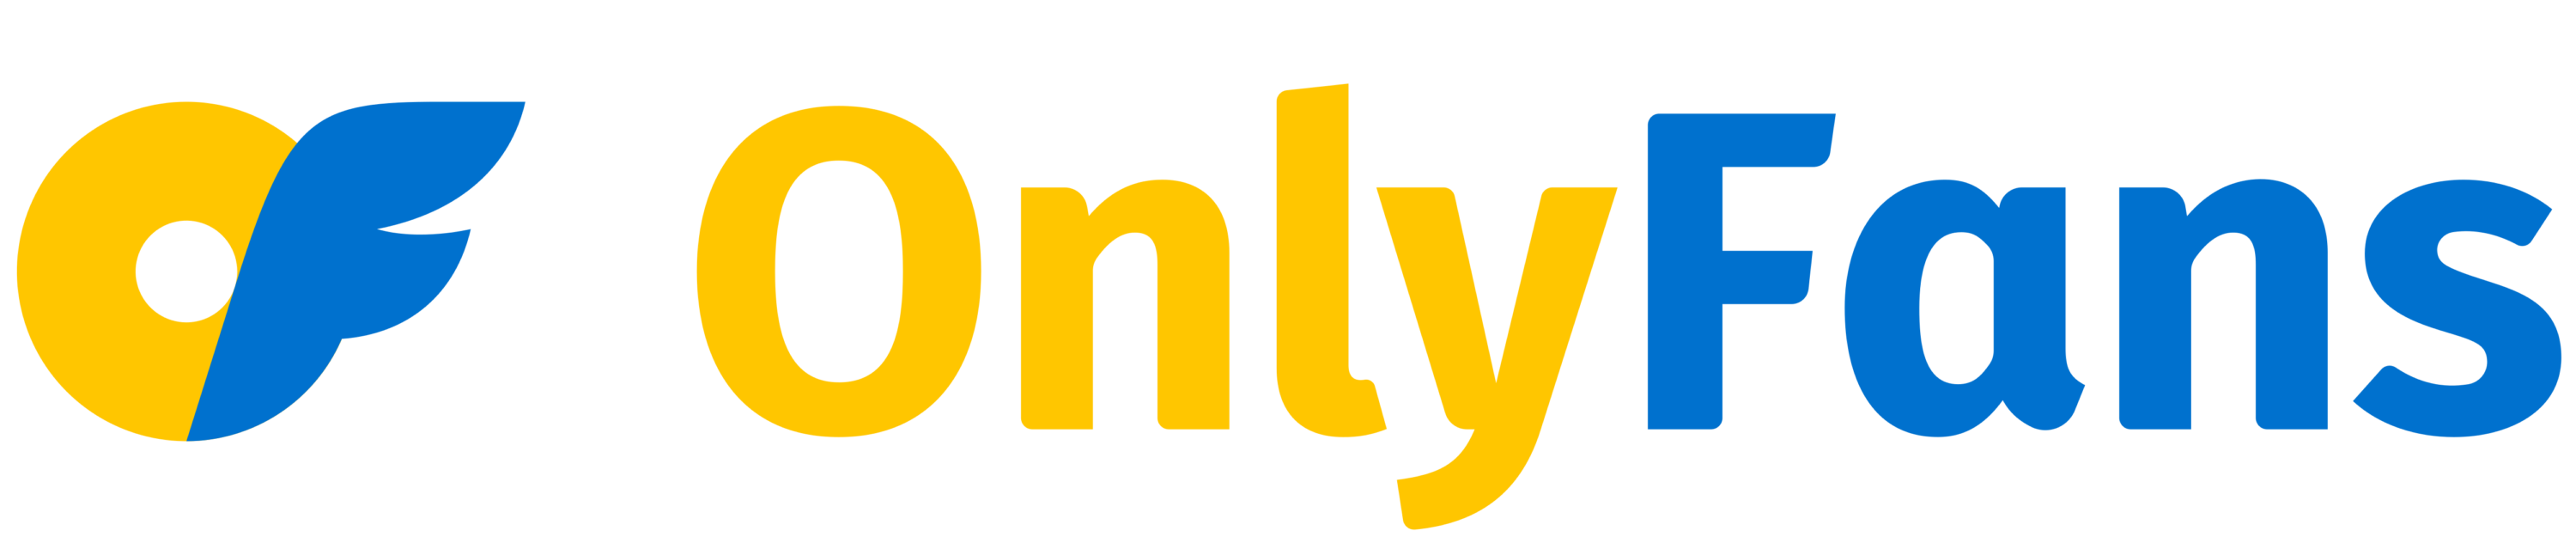 OnlyFans Logo 2021 Ukraine variant